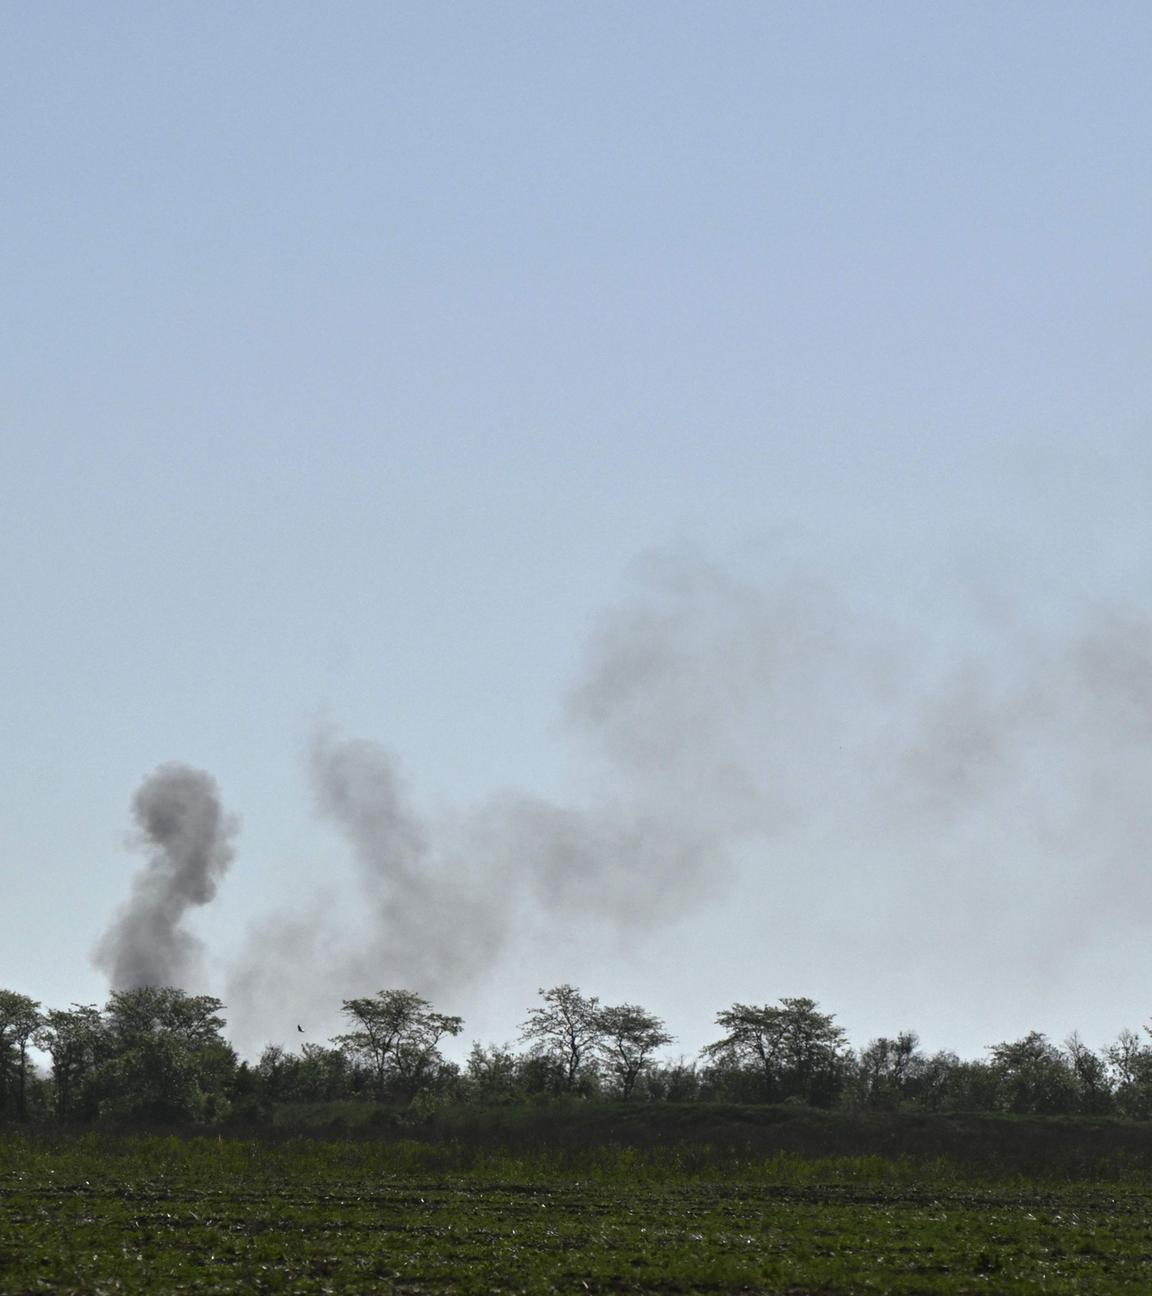 Rauch am Himmel nach Beschuss in Tschassiw Jar in der Region Donezk.